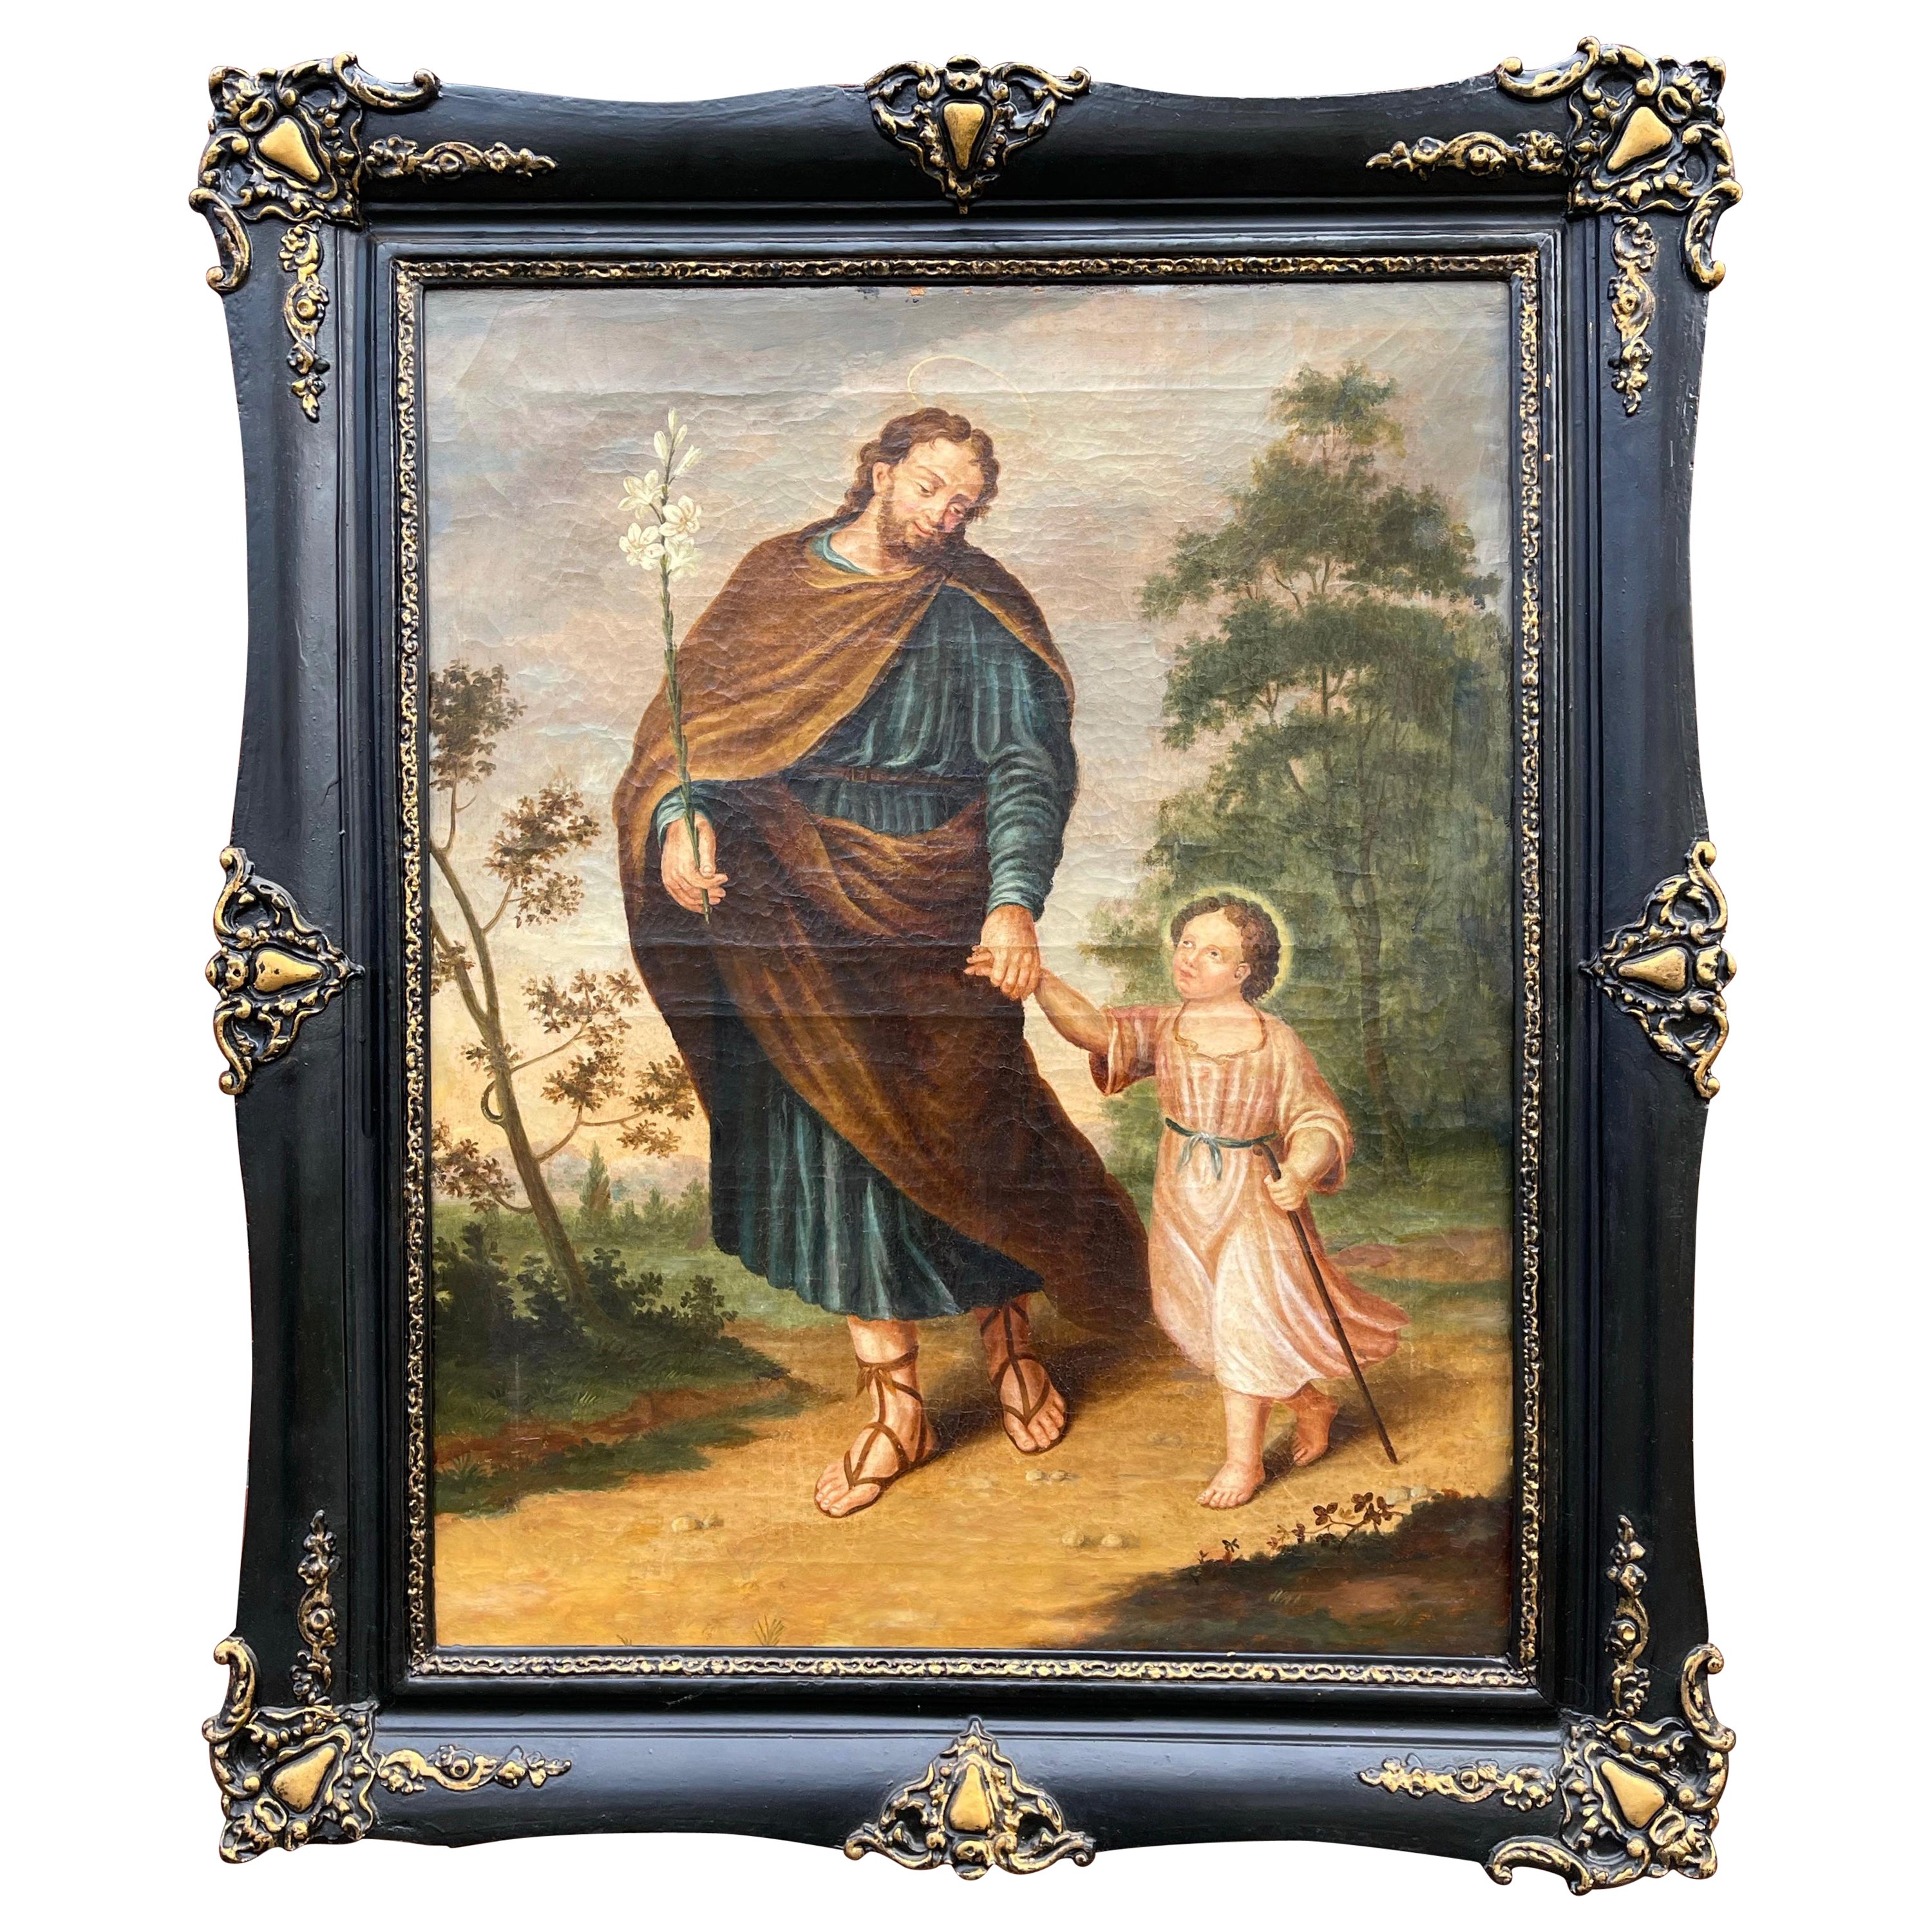 Großes antikes Gemälde in Öl auf Leinwand, Saint Joseph W. Lily und das Kind Jesus